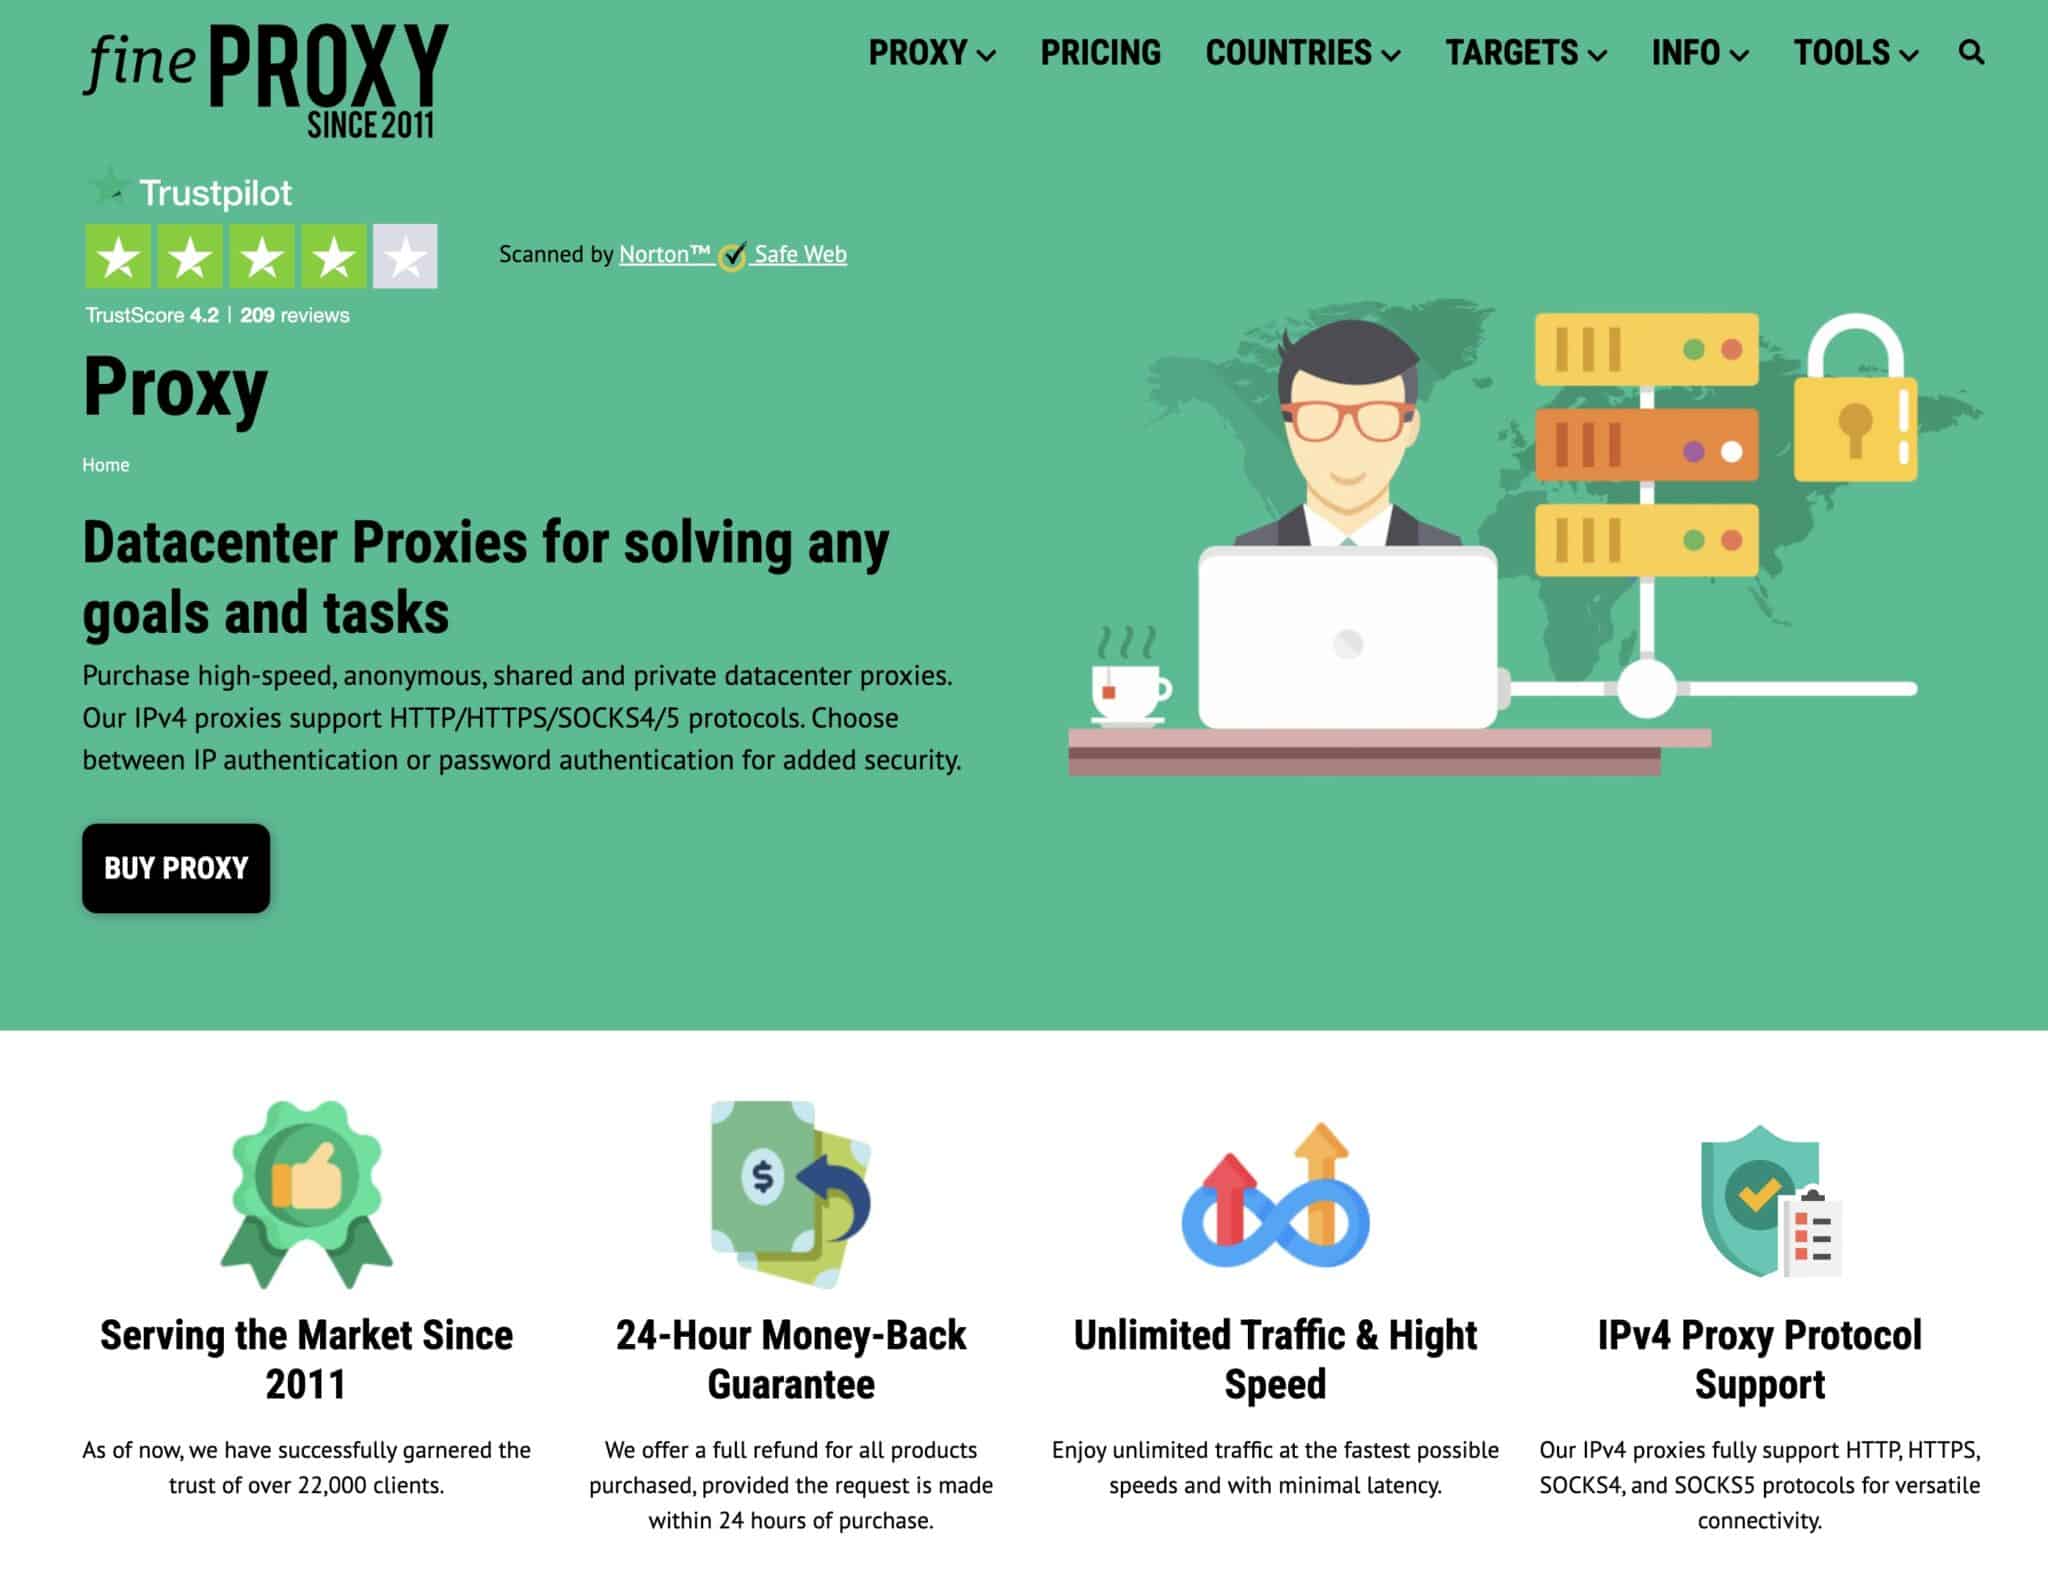 FineProxy vs 10proxy.com: Choosing the Best Proxy Service